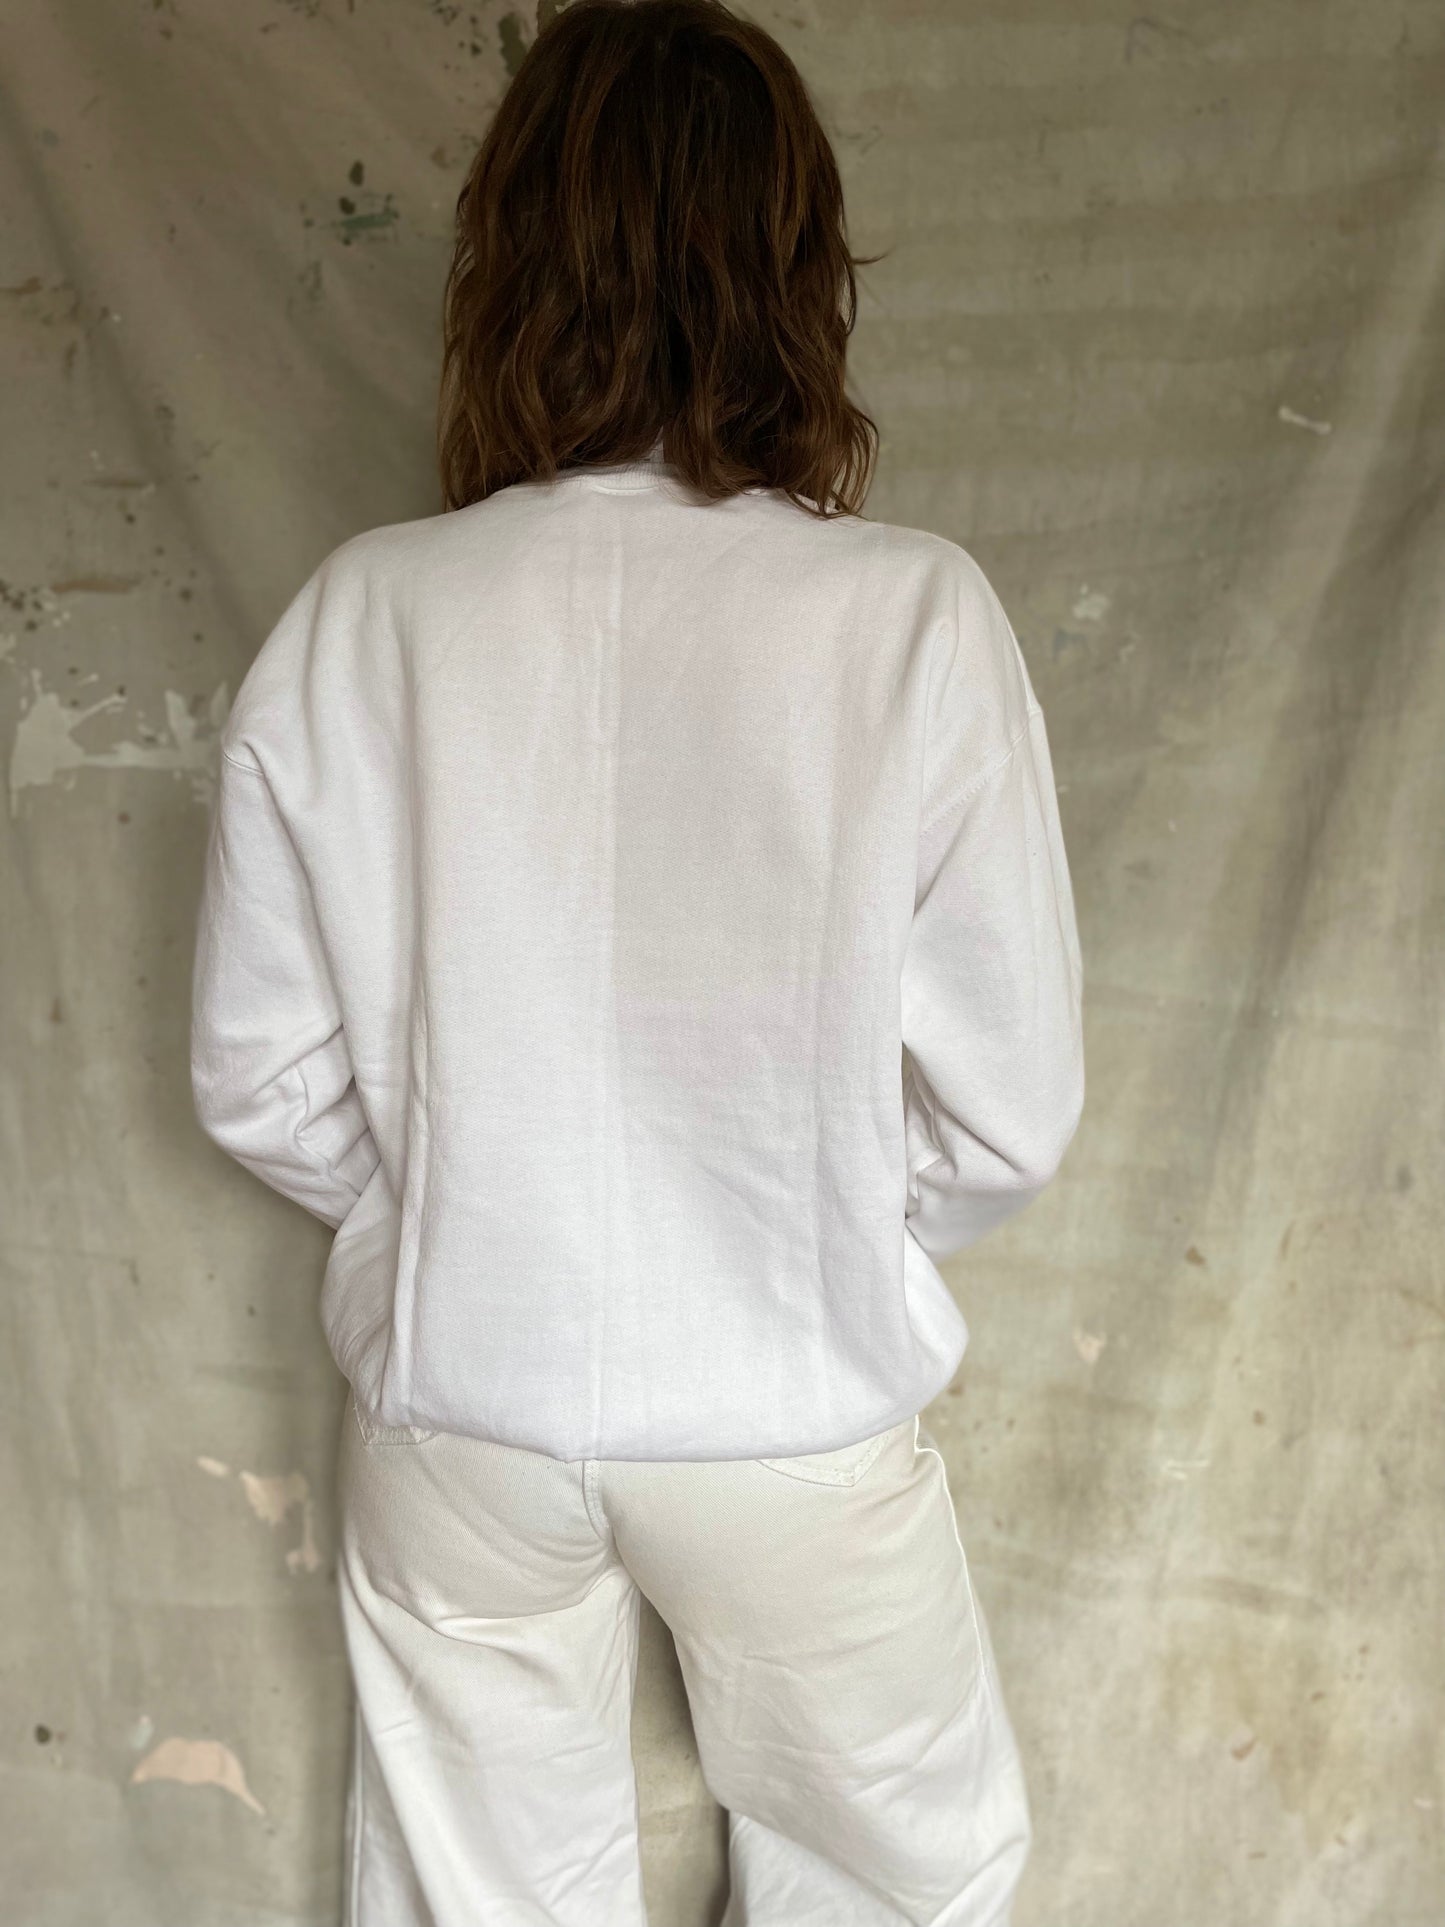 90s Deadstock Blank White Sweatshirt